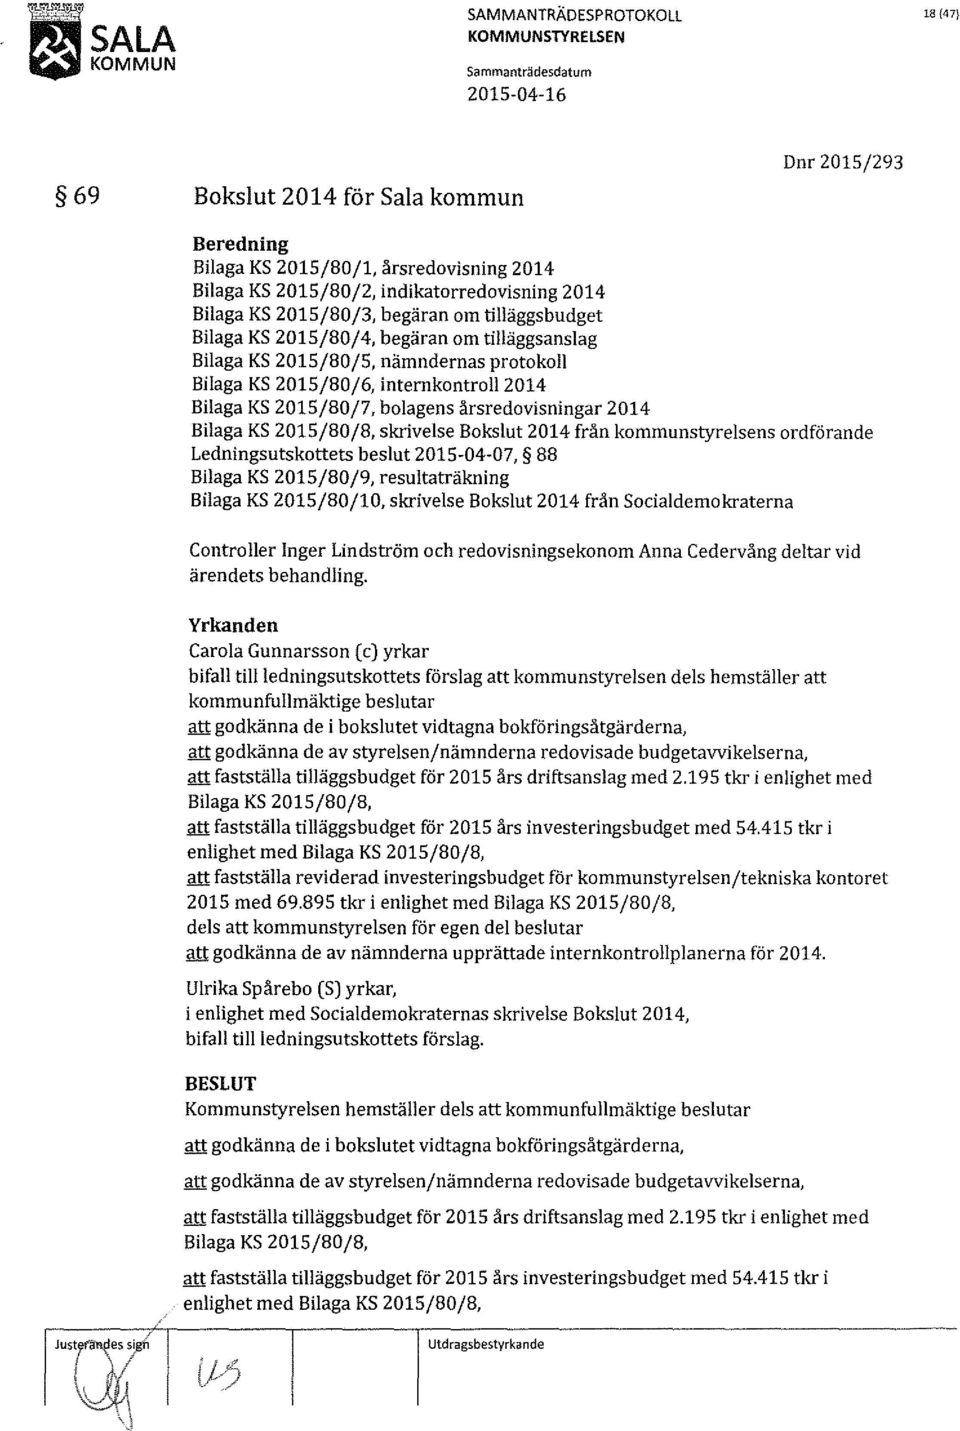 2015/80/8, skrivelse Bokslut 2014 från kommunstyrelsens ordförande Ledningsutskottets beslut 2015-04-07, 88 Bilaga KS 2015/80/9, resultaträkning Bilaga KS 2015/80/10, skrivelse Bokslut 2014 från